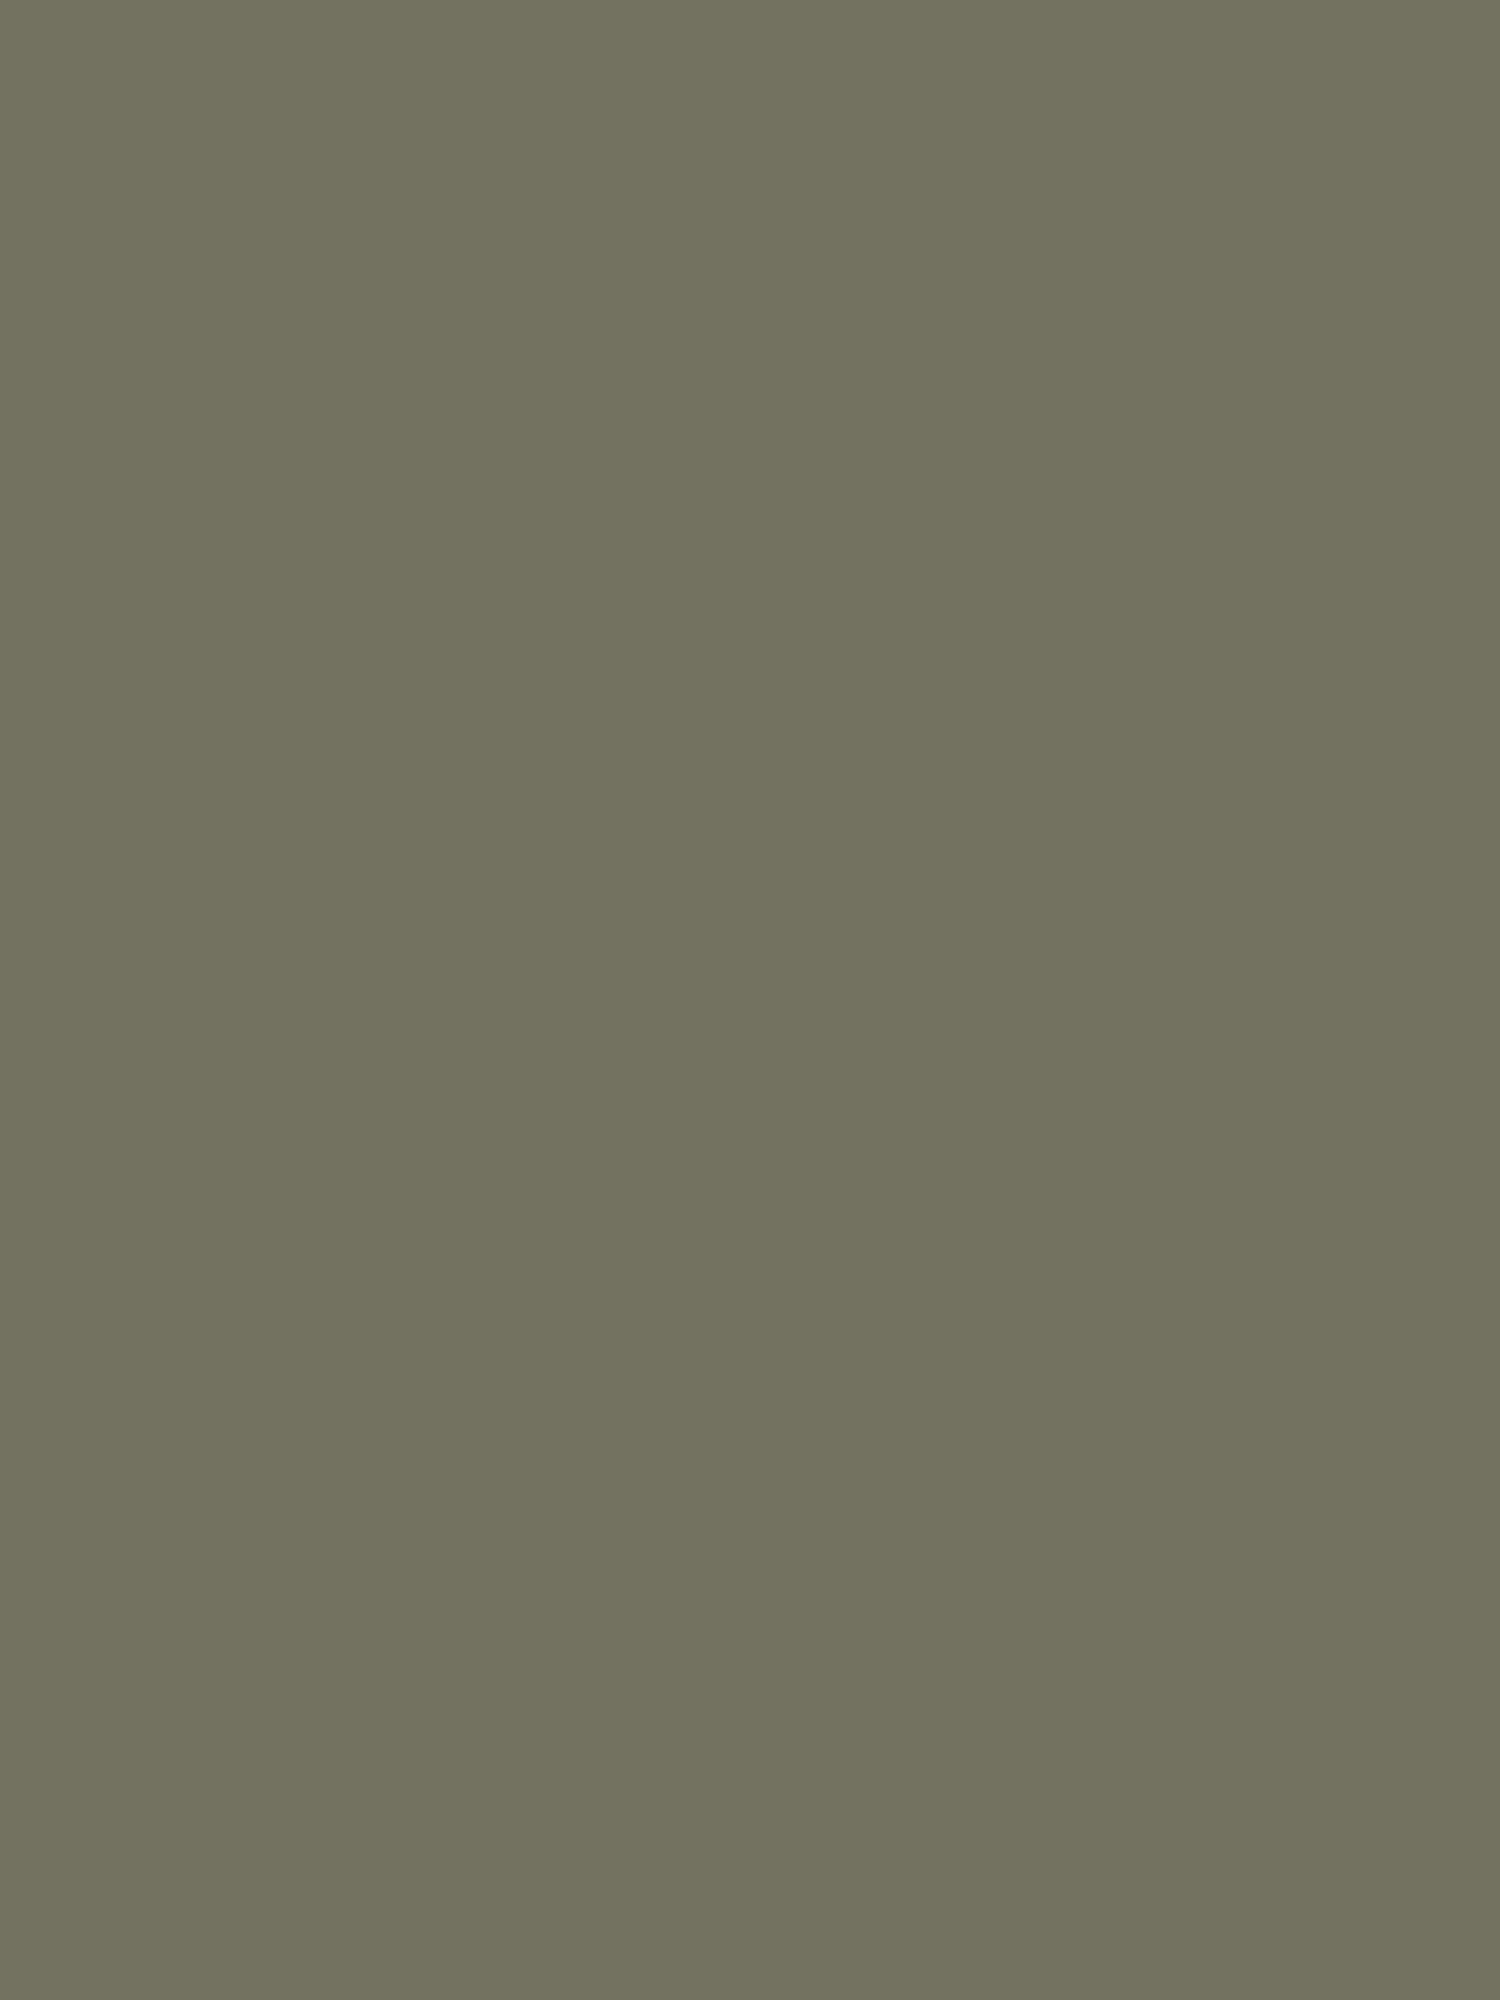 Эрнест Липгарт. Портрет императора Николая II (фрагмент). 1900. Музей-заповедник «Царское Село», Пушкин, Санкт-Петербург